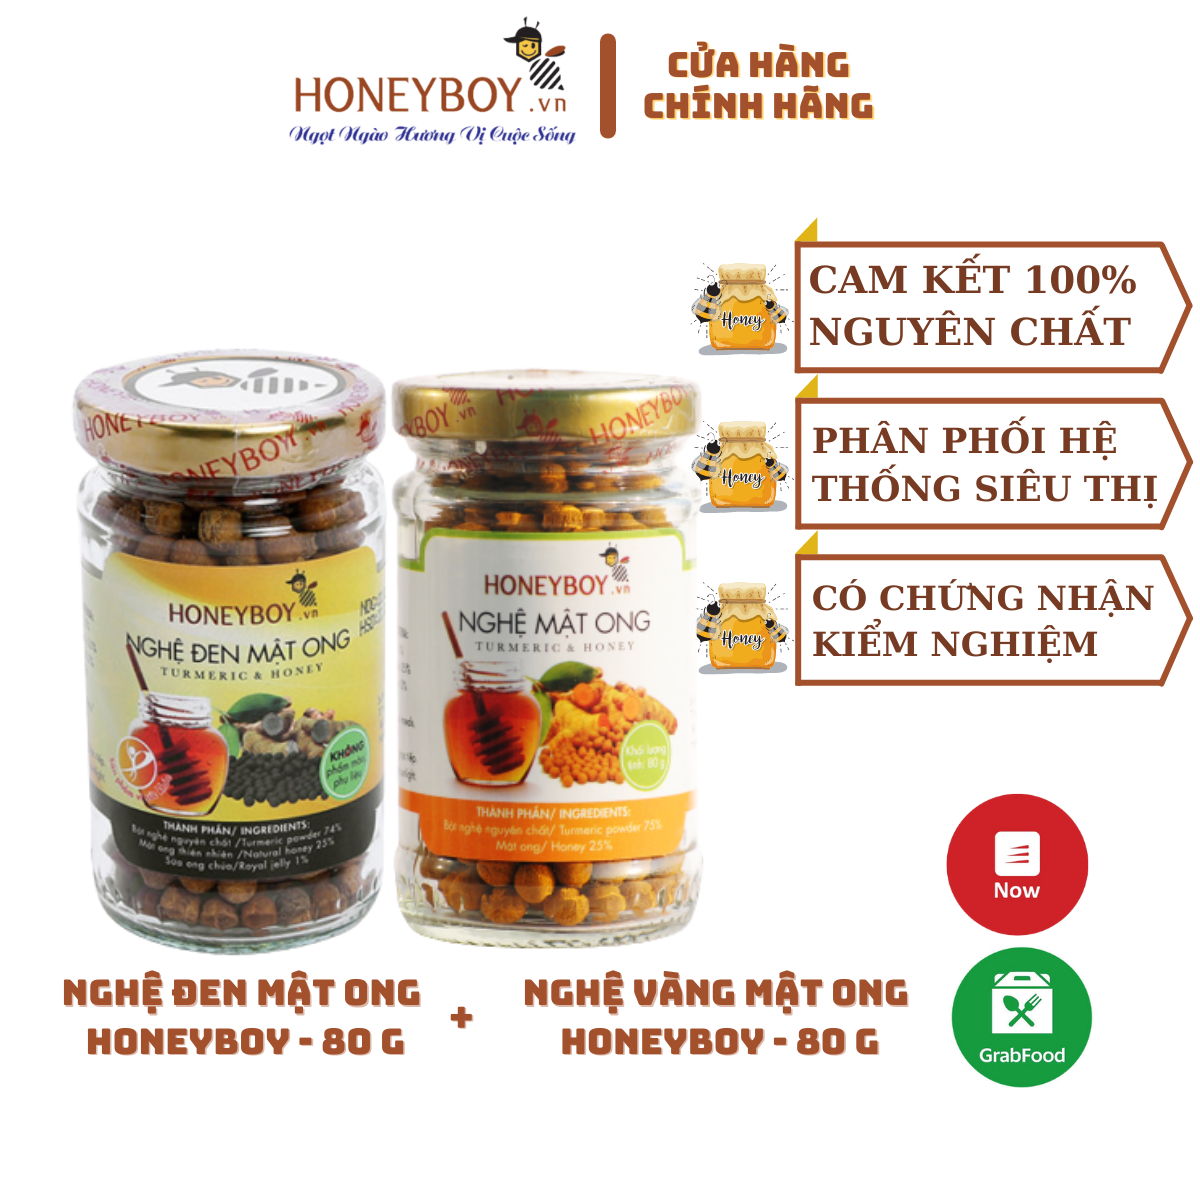 Bộ Nghệ vàng mật ong Honeyboy 80g và Nghệ đen Mật ong Honeyboy 80g